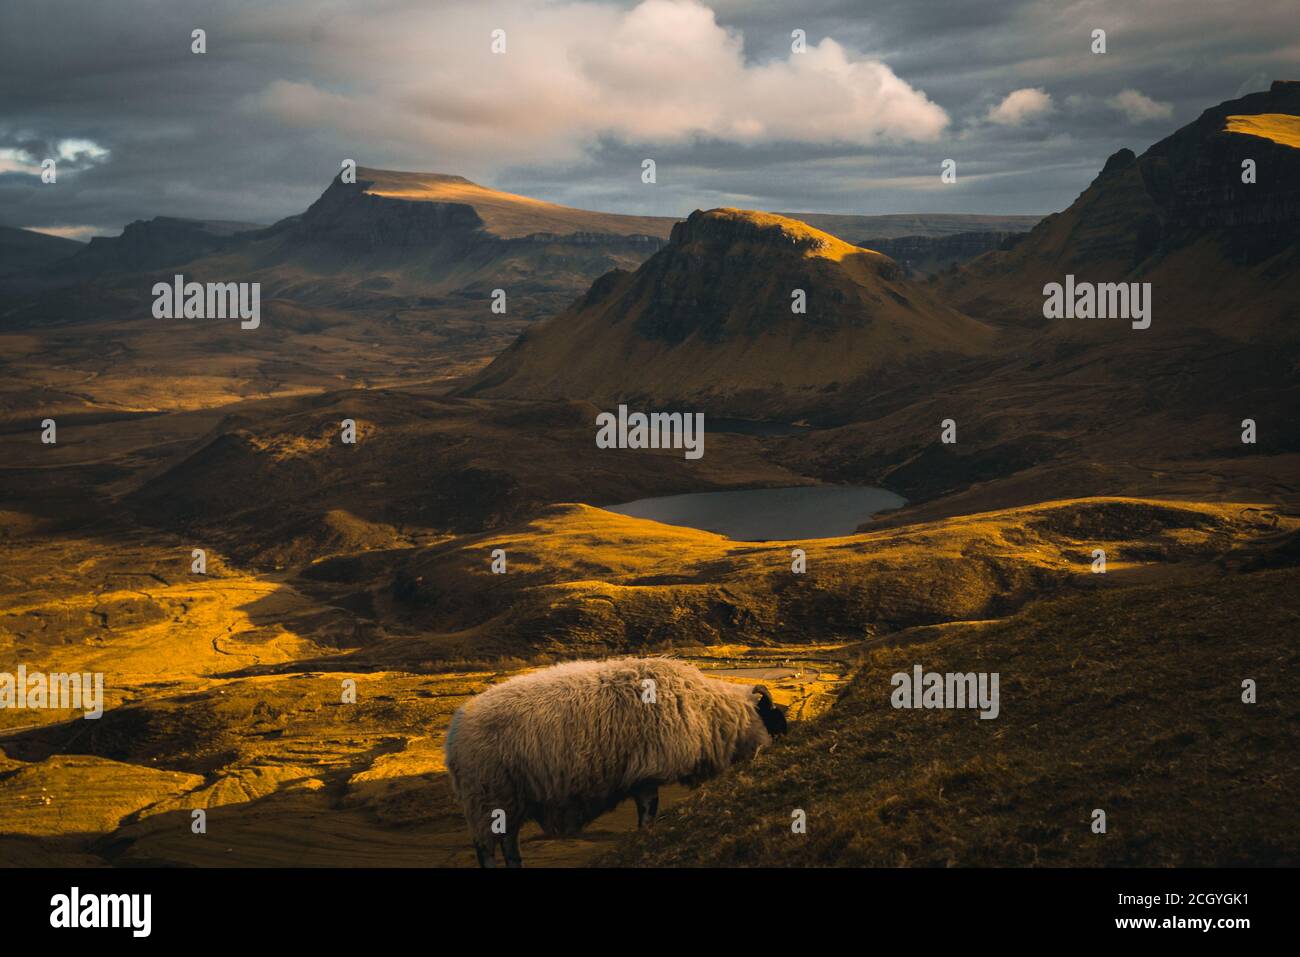 Schafe im goldenen warmen Abendlicht in den trotternish scottish Mountains - der Quiraing auf der Insel skye, Schottland. Stockfoto